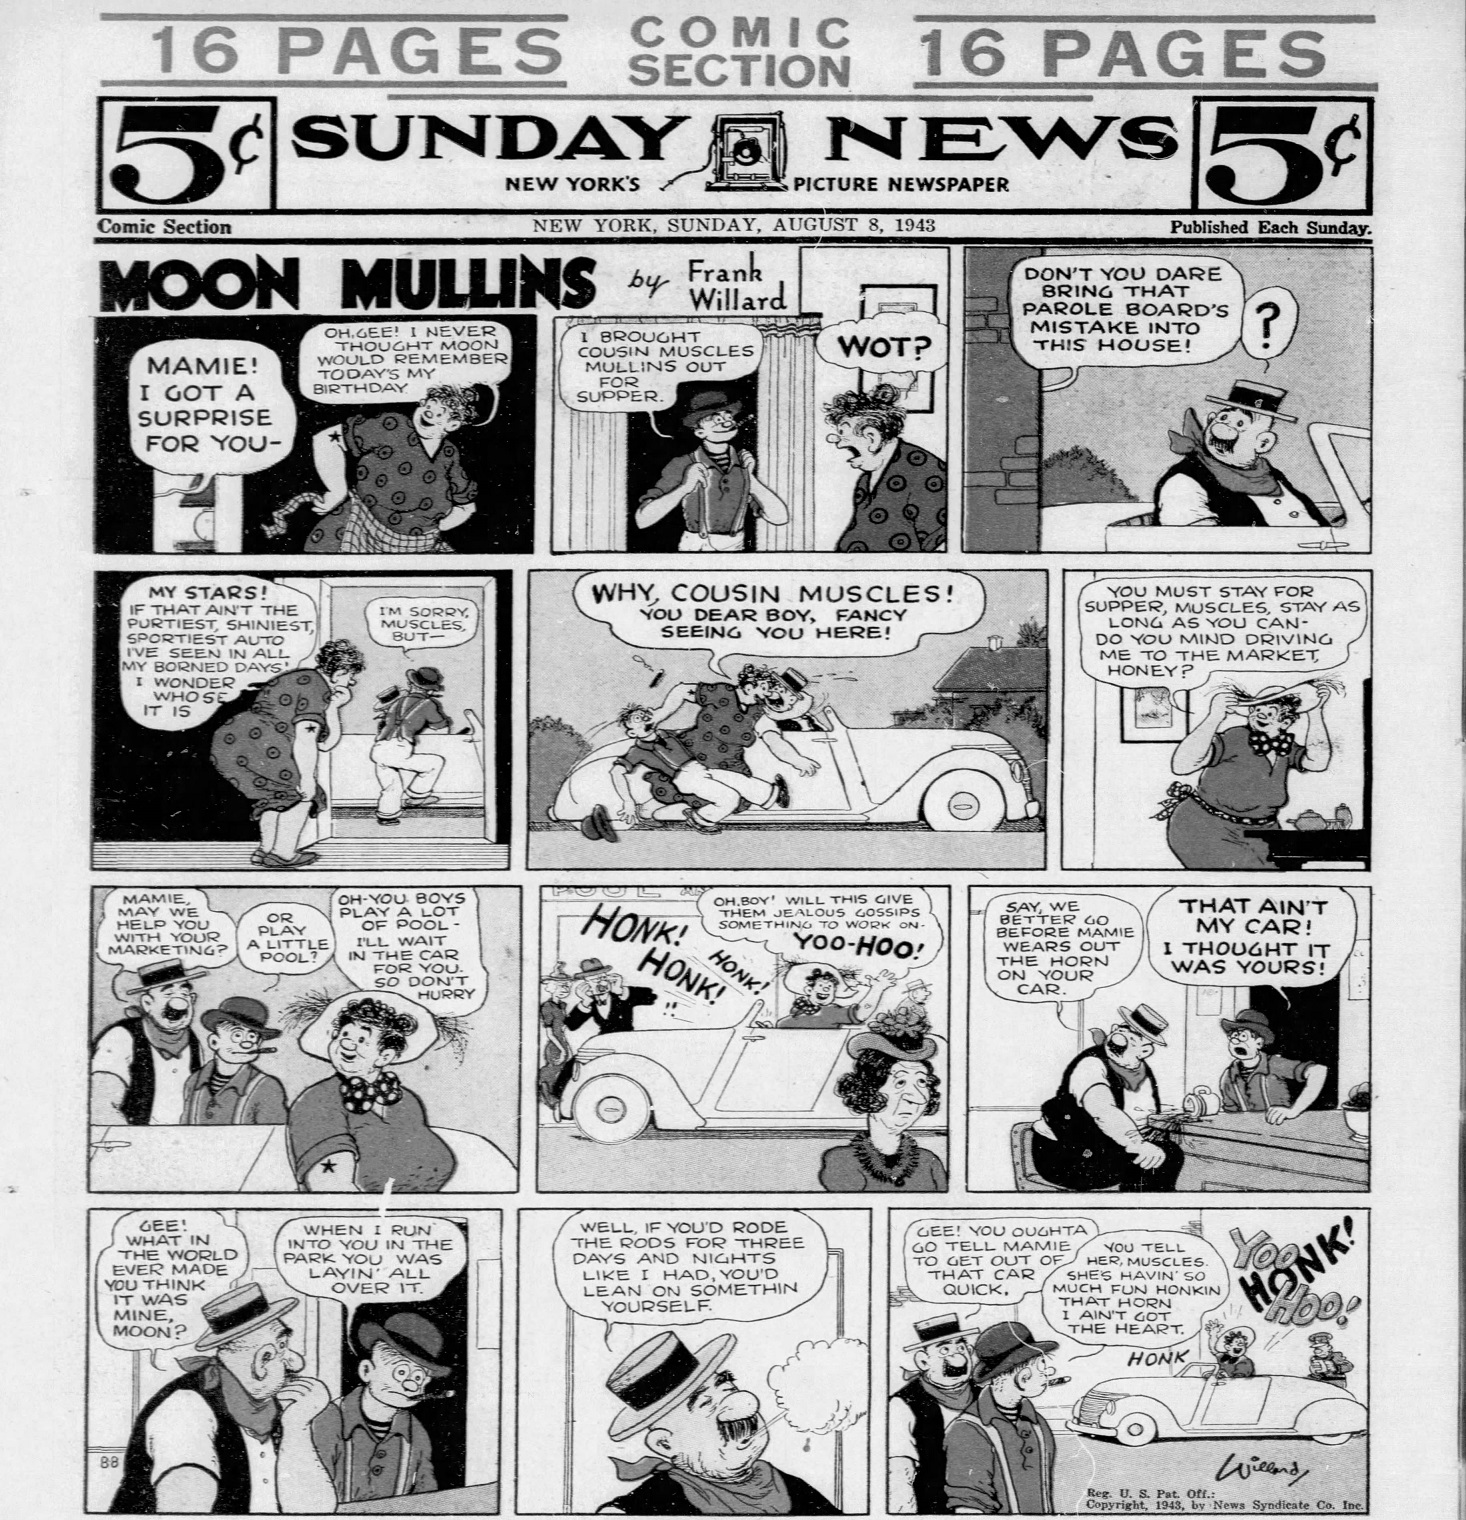 Daily_News_Sun__Aug_8__1943_(10).jpg